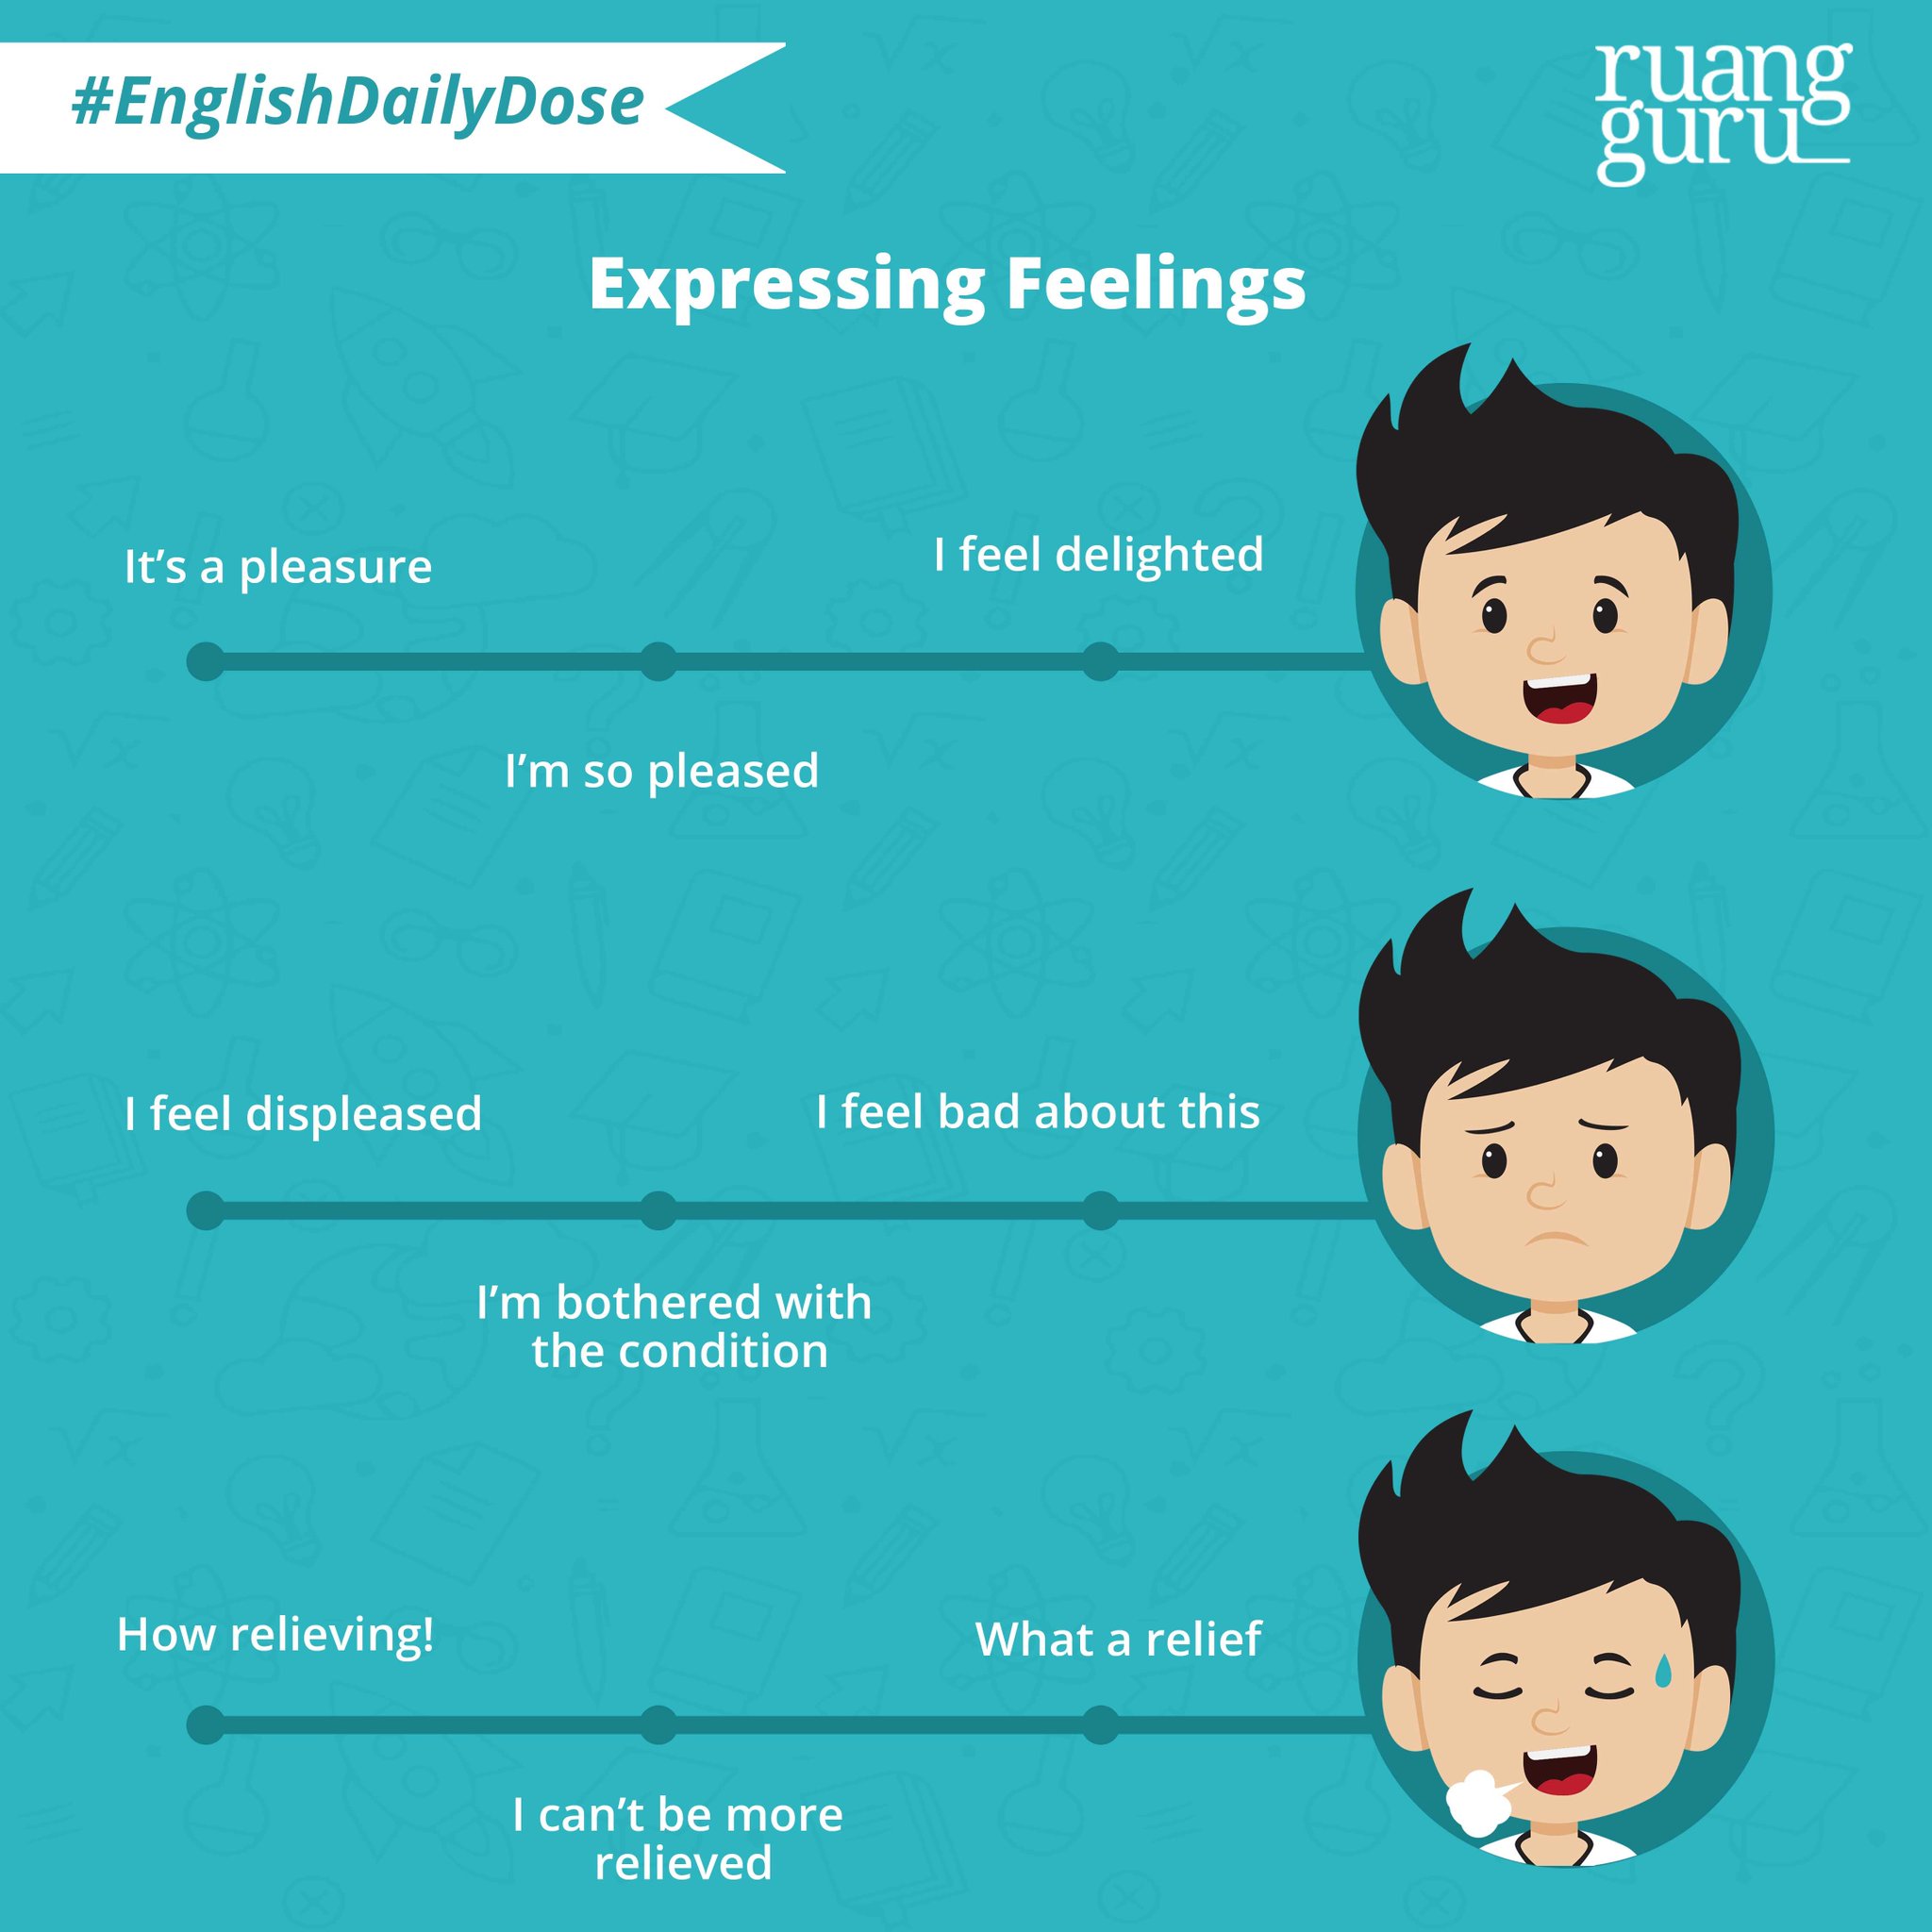 Ruangguru on Twitter "Saatnya EnglishDailyDose nih Yuk belajar bagaimana mengekspresikan perasaan kamu dalam bahasa Inggris Coba ekspresikan perasaan